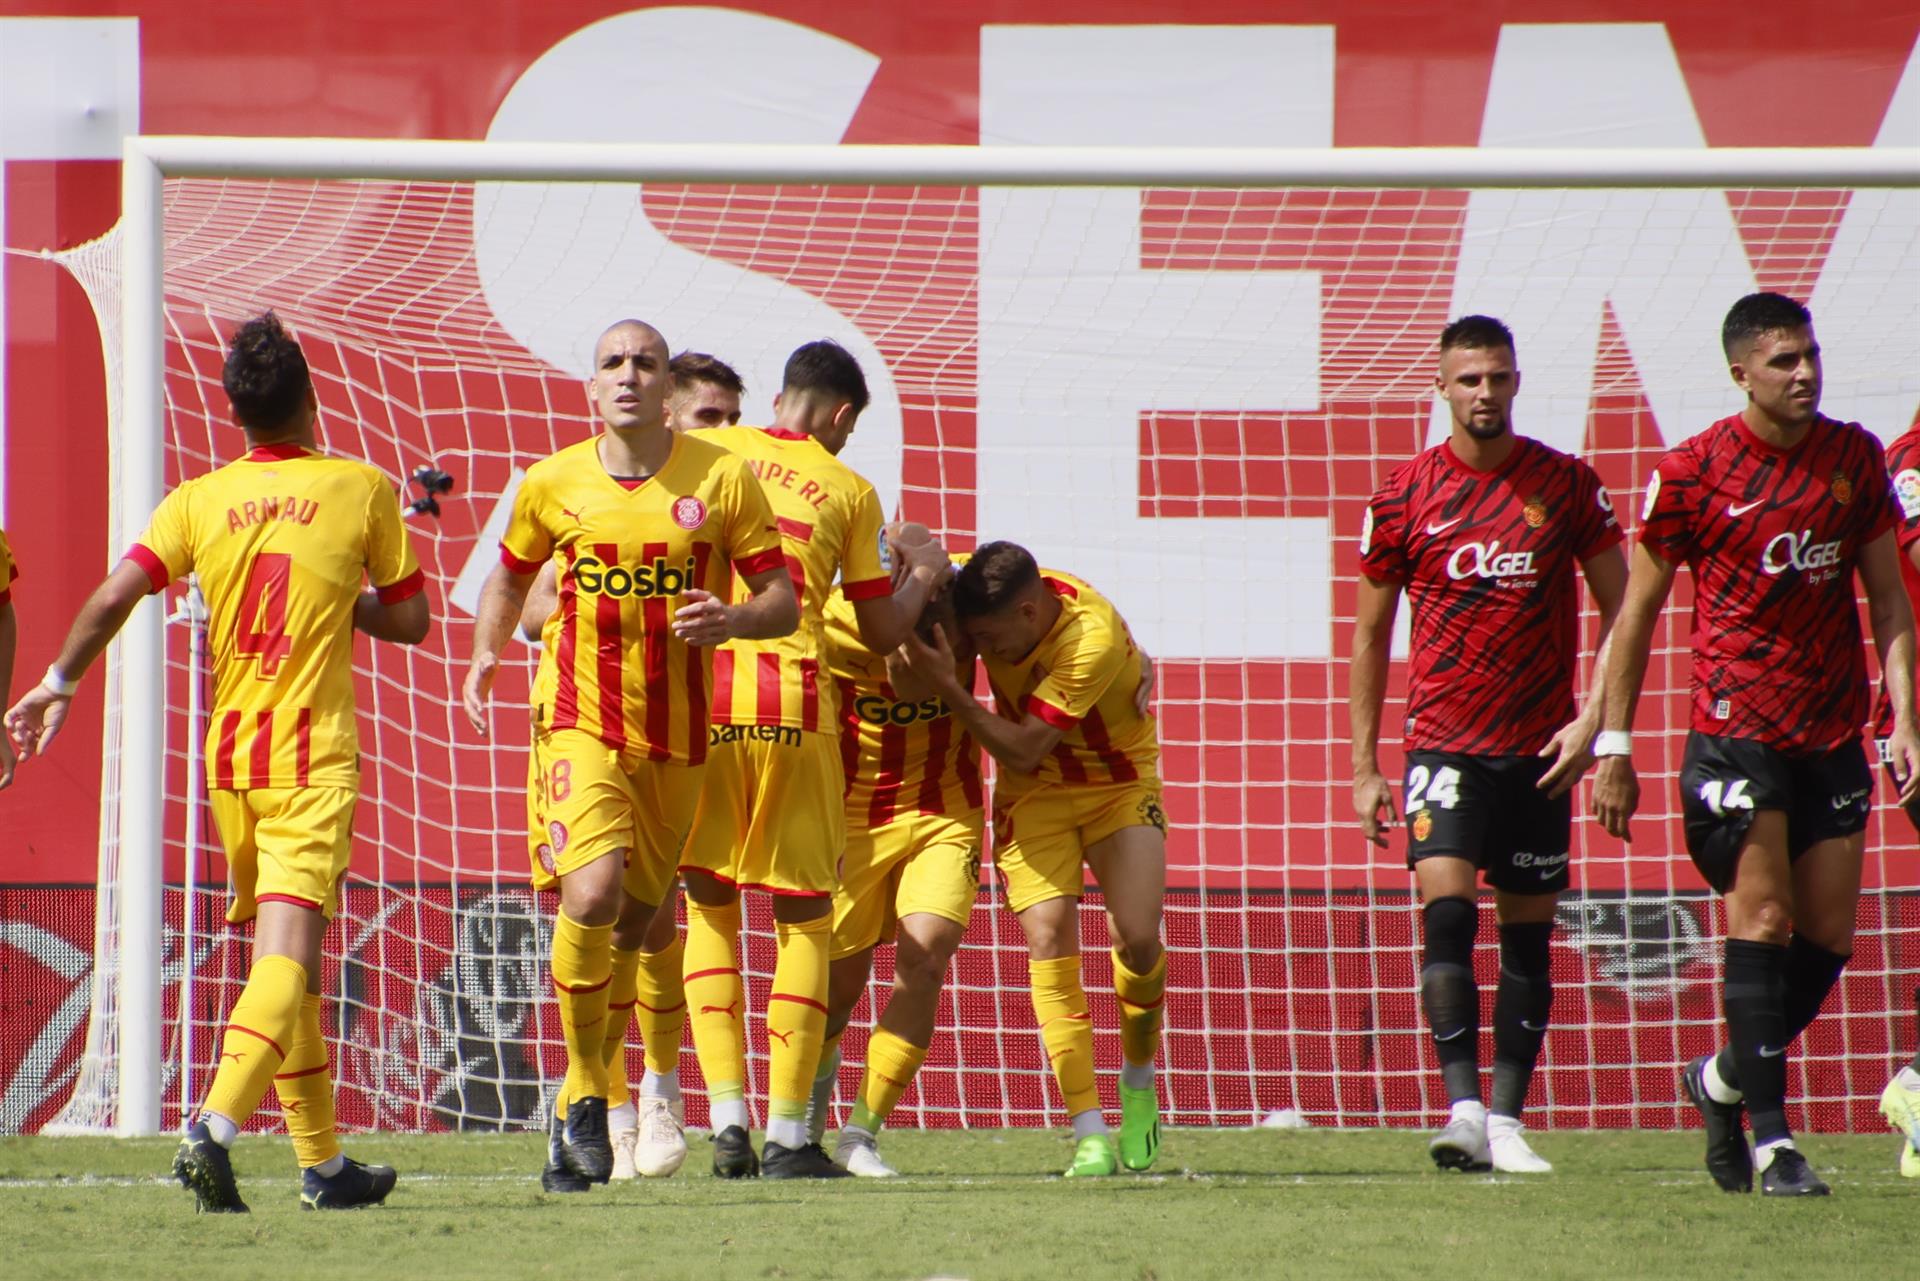 El jugador del Girona Samuel Sáiz (c) celebra su gol con el que el equipo ha empatado ante el Mallorca durante el partido de LaLiga Santander disputado en el Estadi de Son Moix en Palma de Mallorca. EFE/Cati Cladera